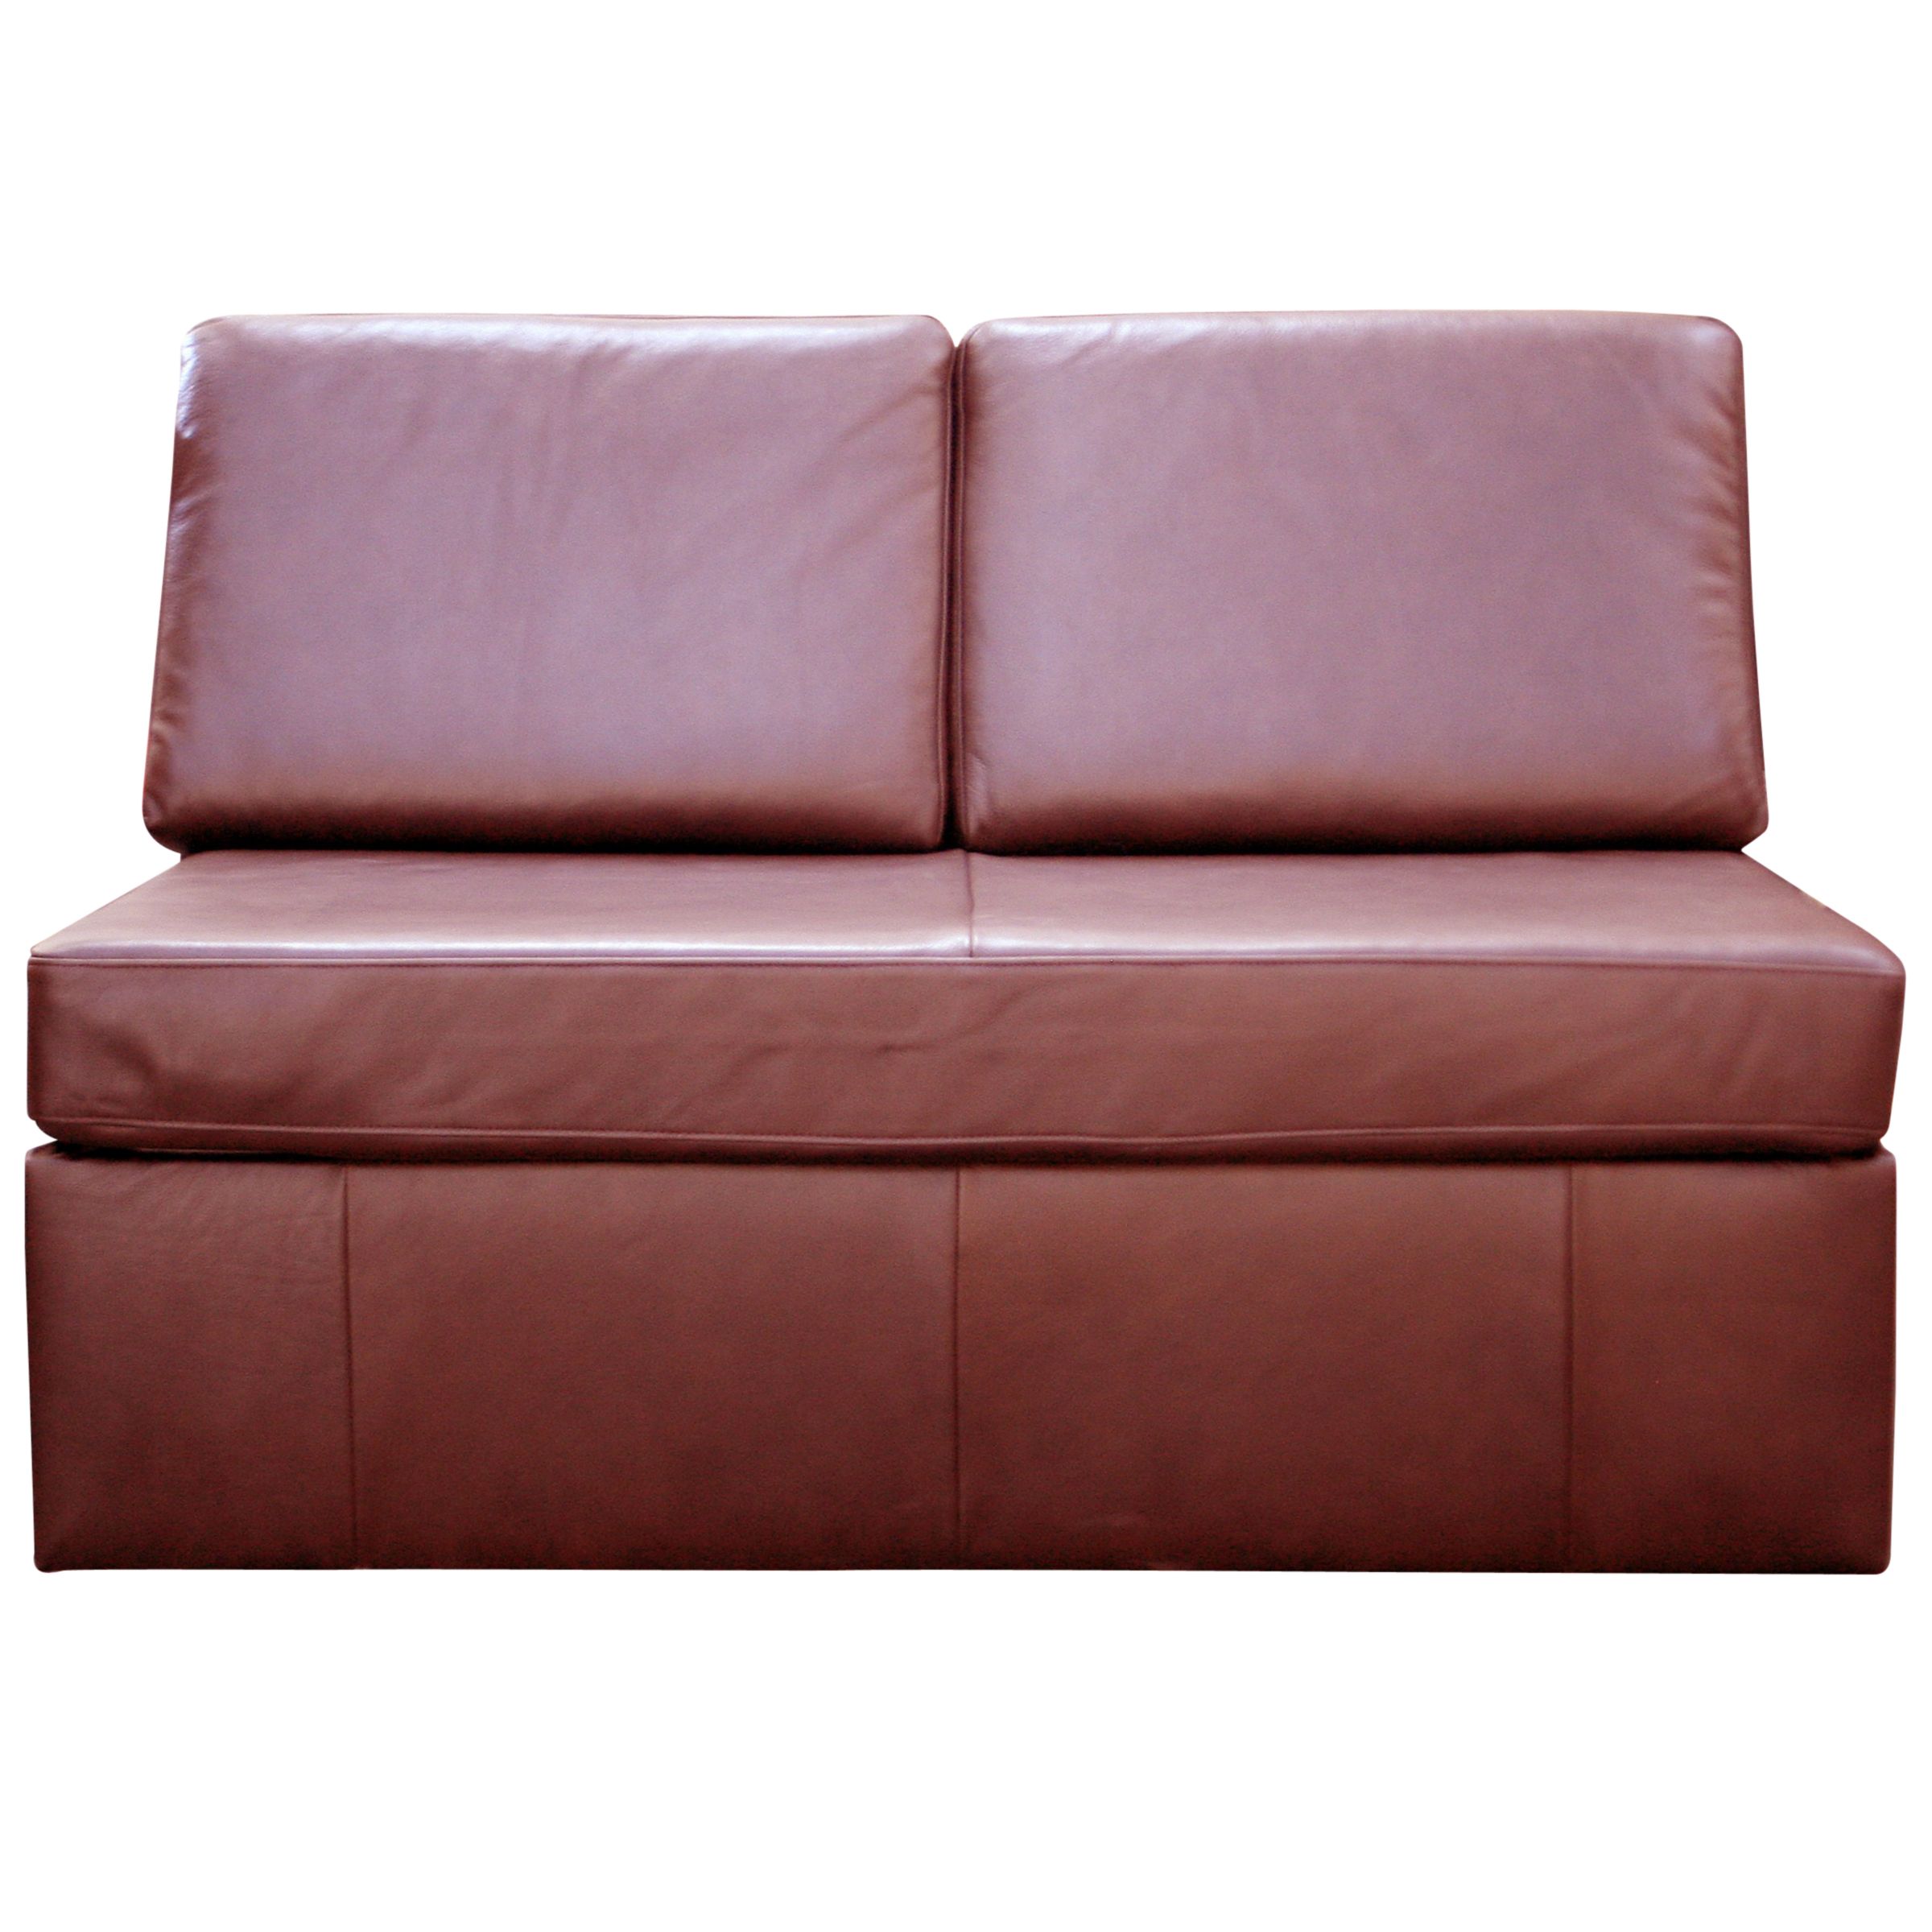 John Lewis Barney Sofa Bed, Chestnut Hide